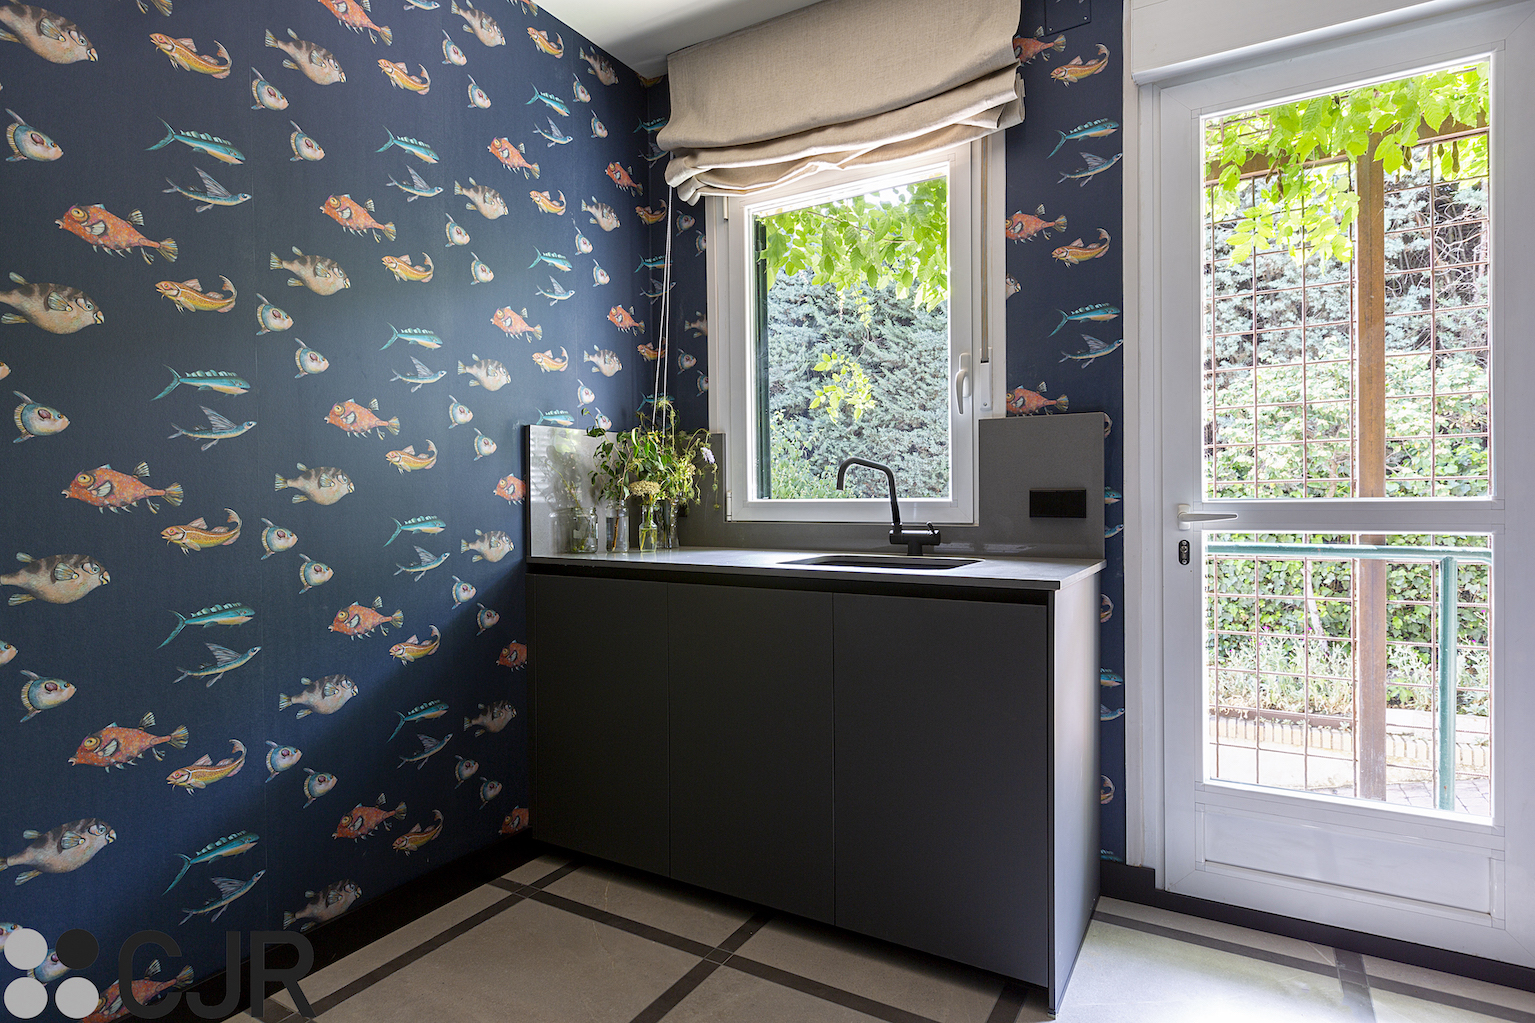 zona office con papel pintado peces y mueble fregadero en gris cjr